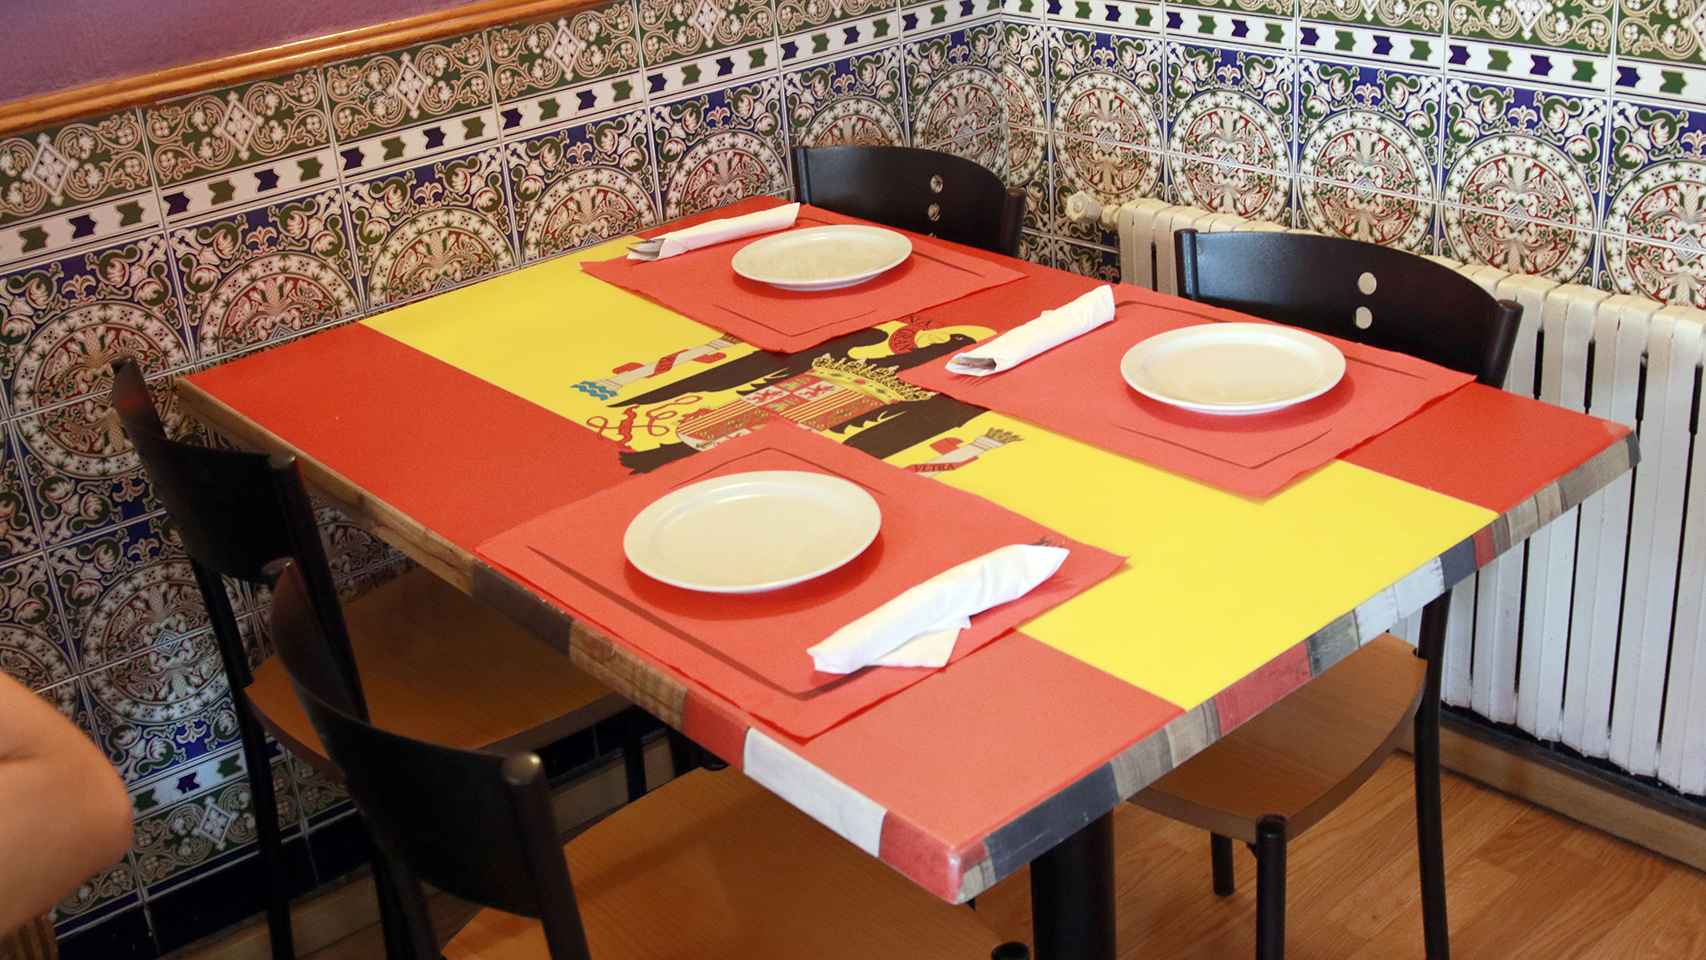 Las mesas de este bar tienen el tapete de Franco o de la bandera franquista.